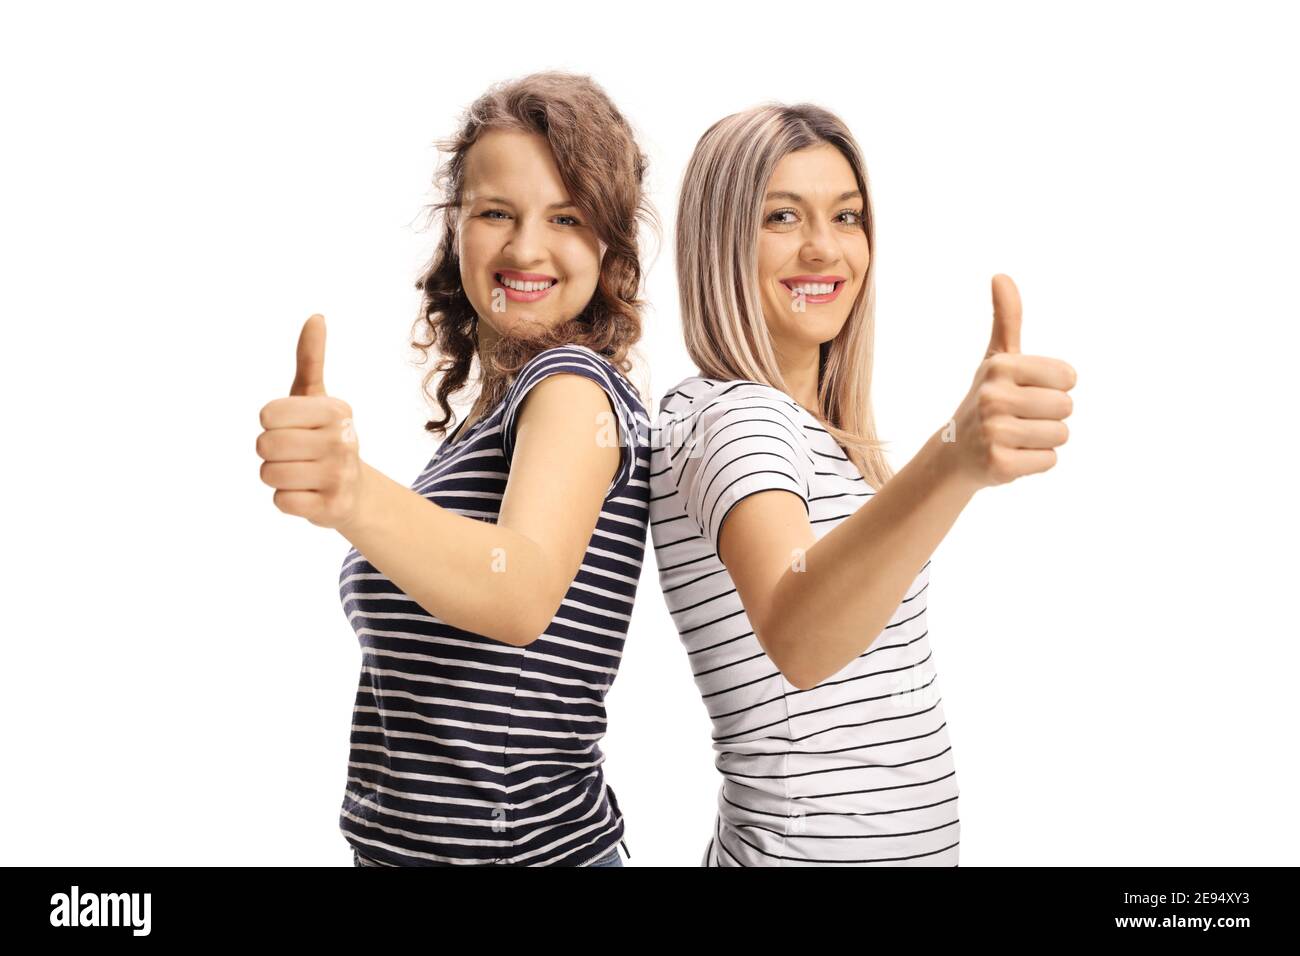 Zwei fröhliche junge Frauen zeigen Daumen nach oben isoliert auf weiß Hintergrund Stockfoto